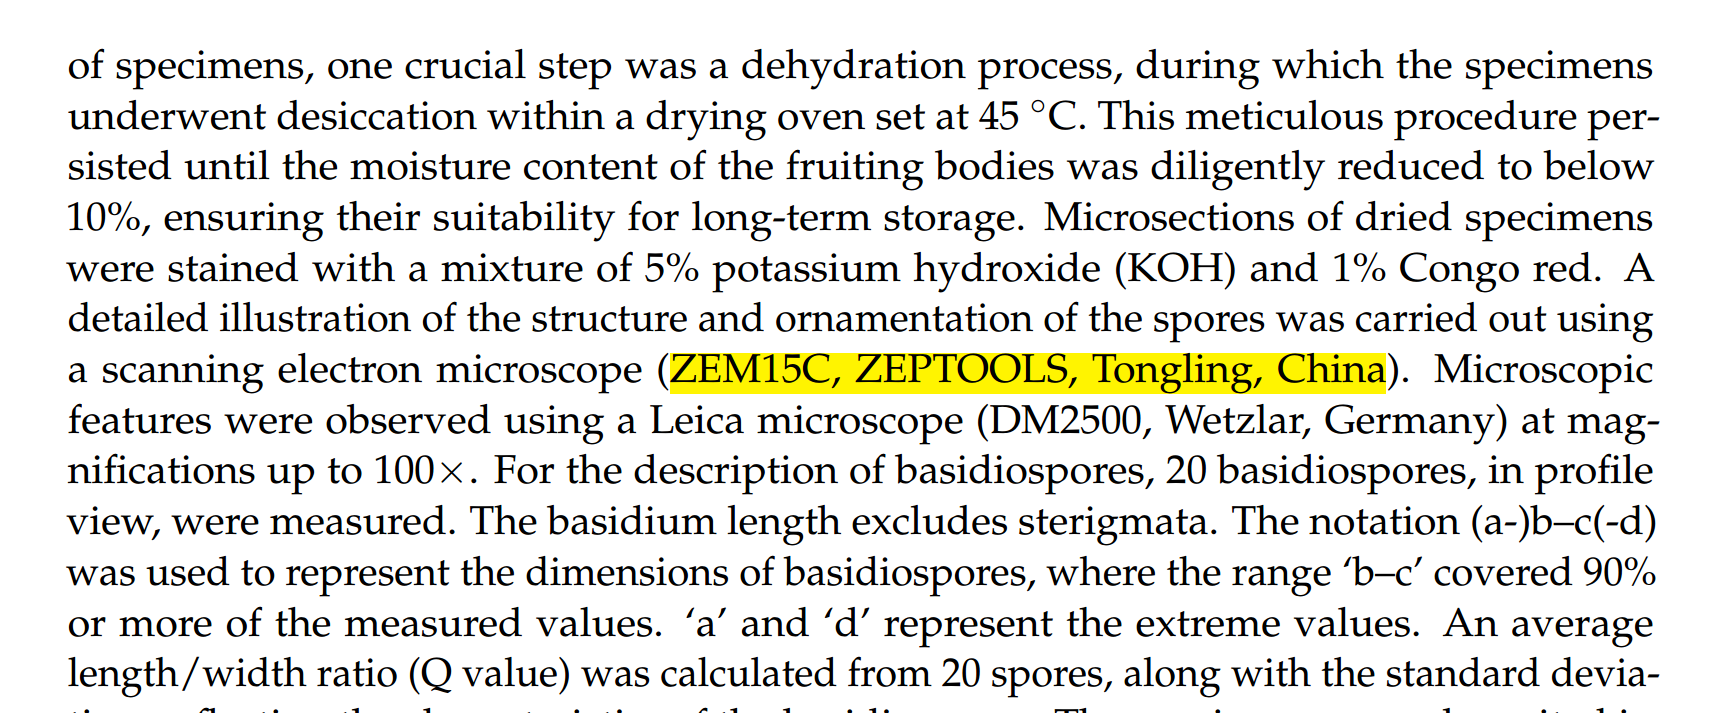 研究使用了泽攸科技的ZEM台扫